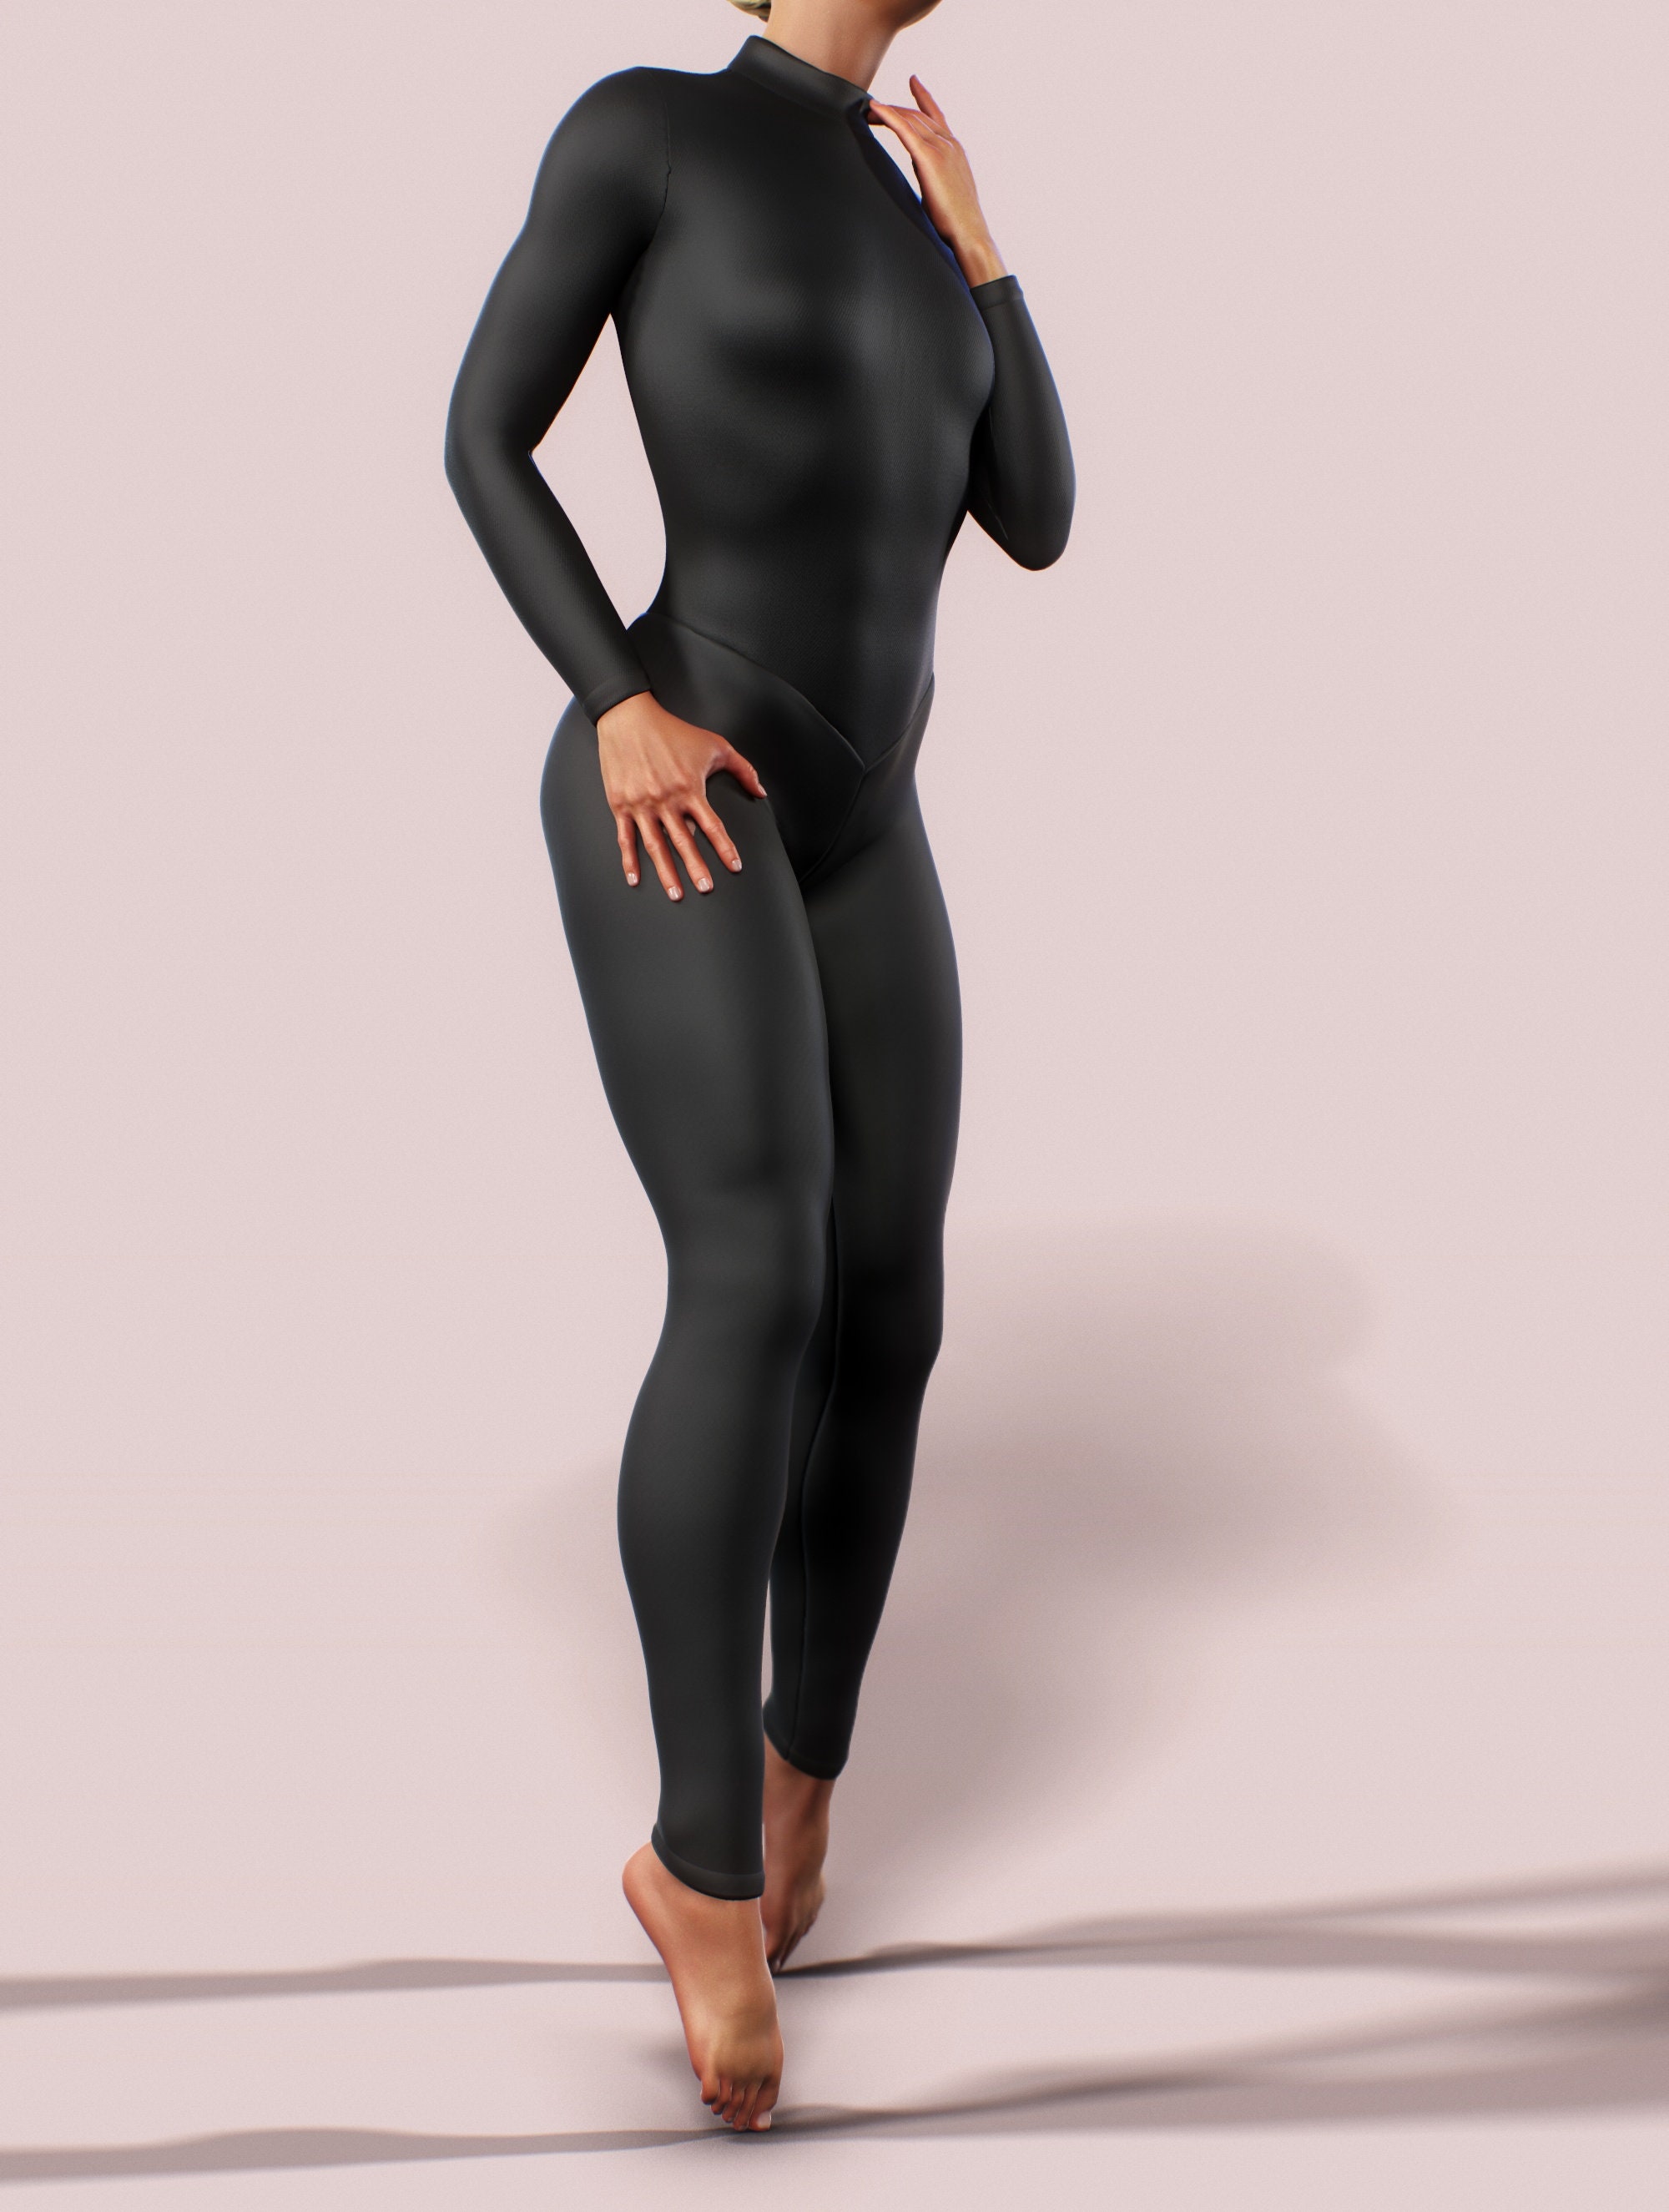 Solid Black Bodysuit Workout Jumpsuit Zipper Turtle Neck Women